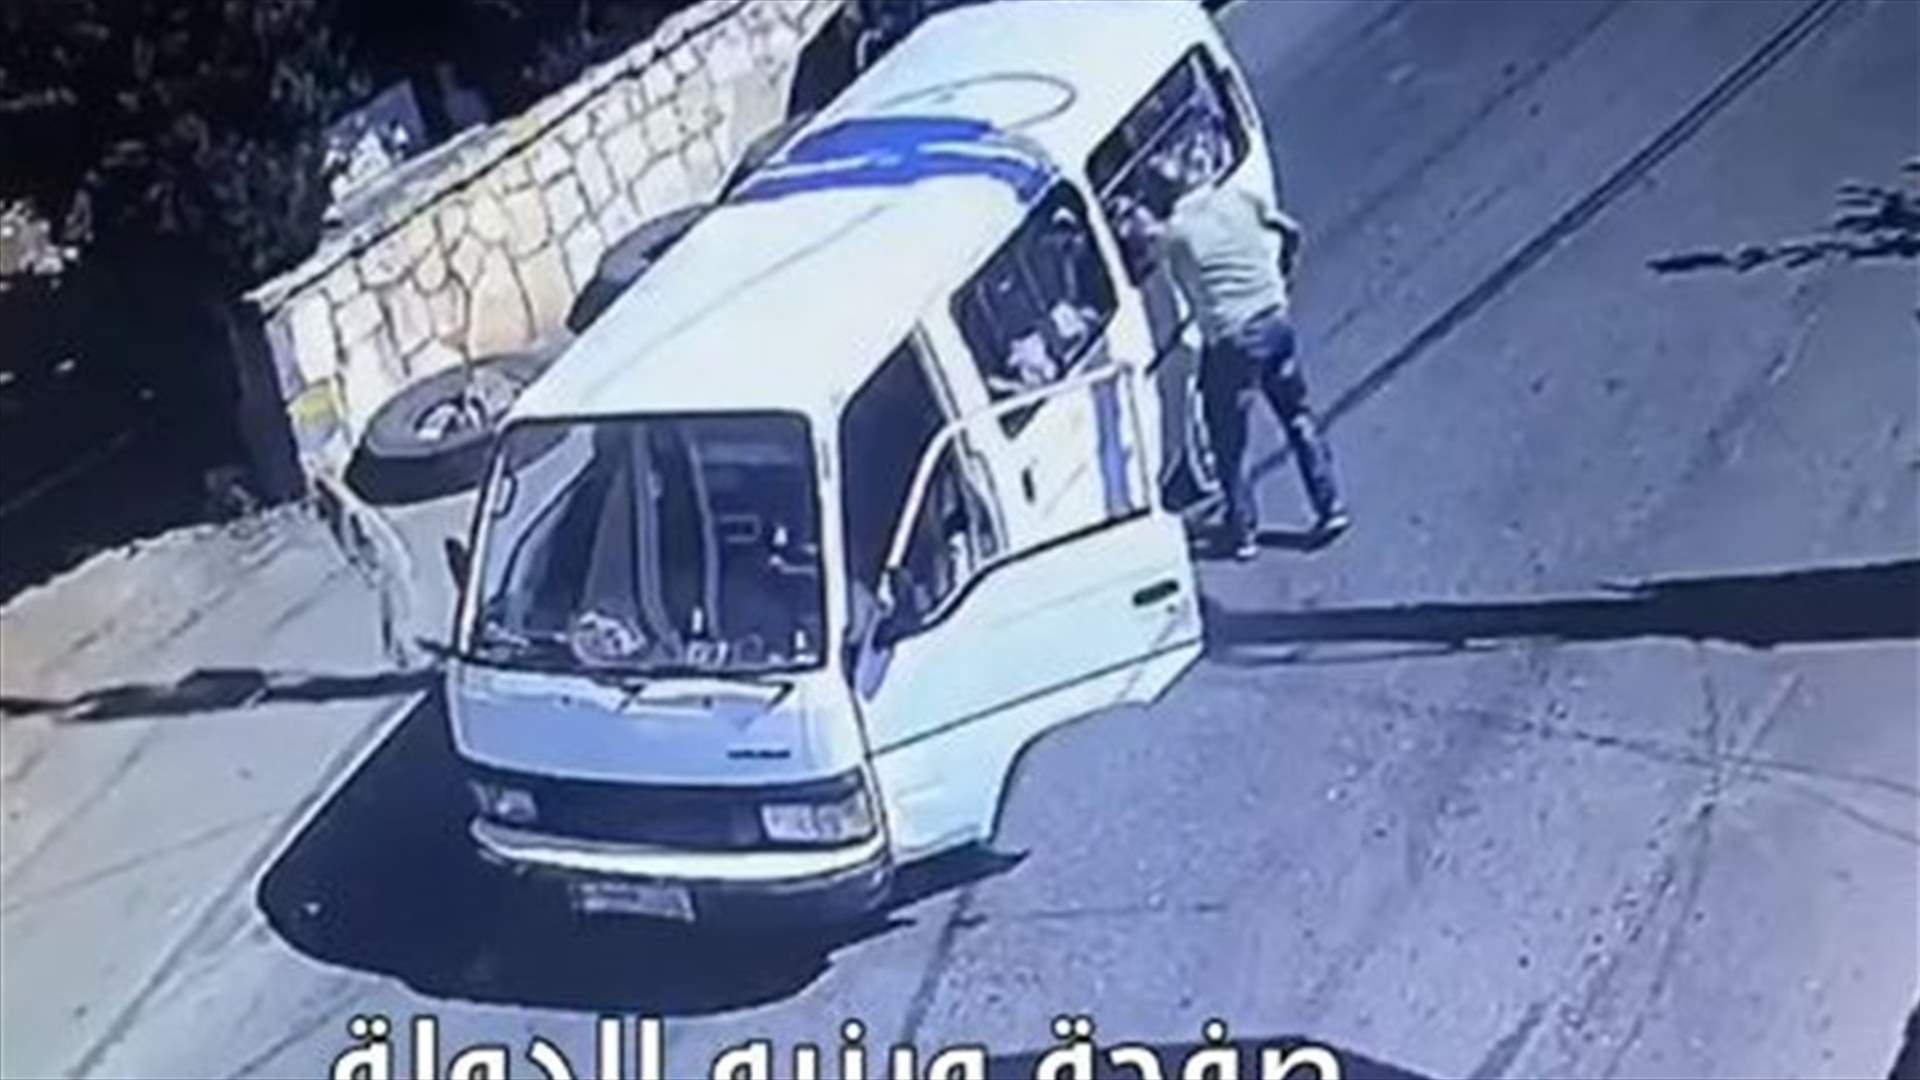 سائق باص مخصص لنقل الاطفال... نزل وسط الطريق وبدأ بضربهم في اقليم الخروب (فيديو)